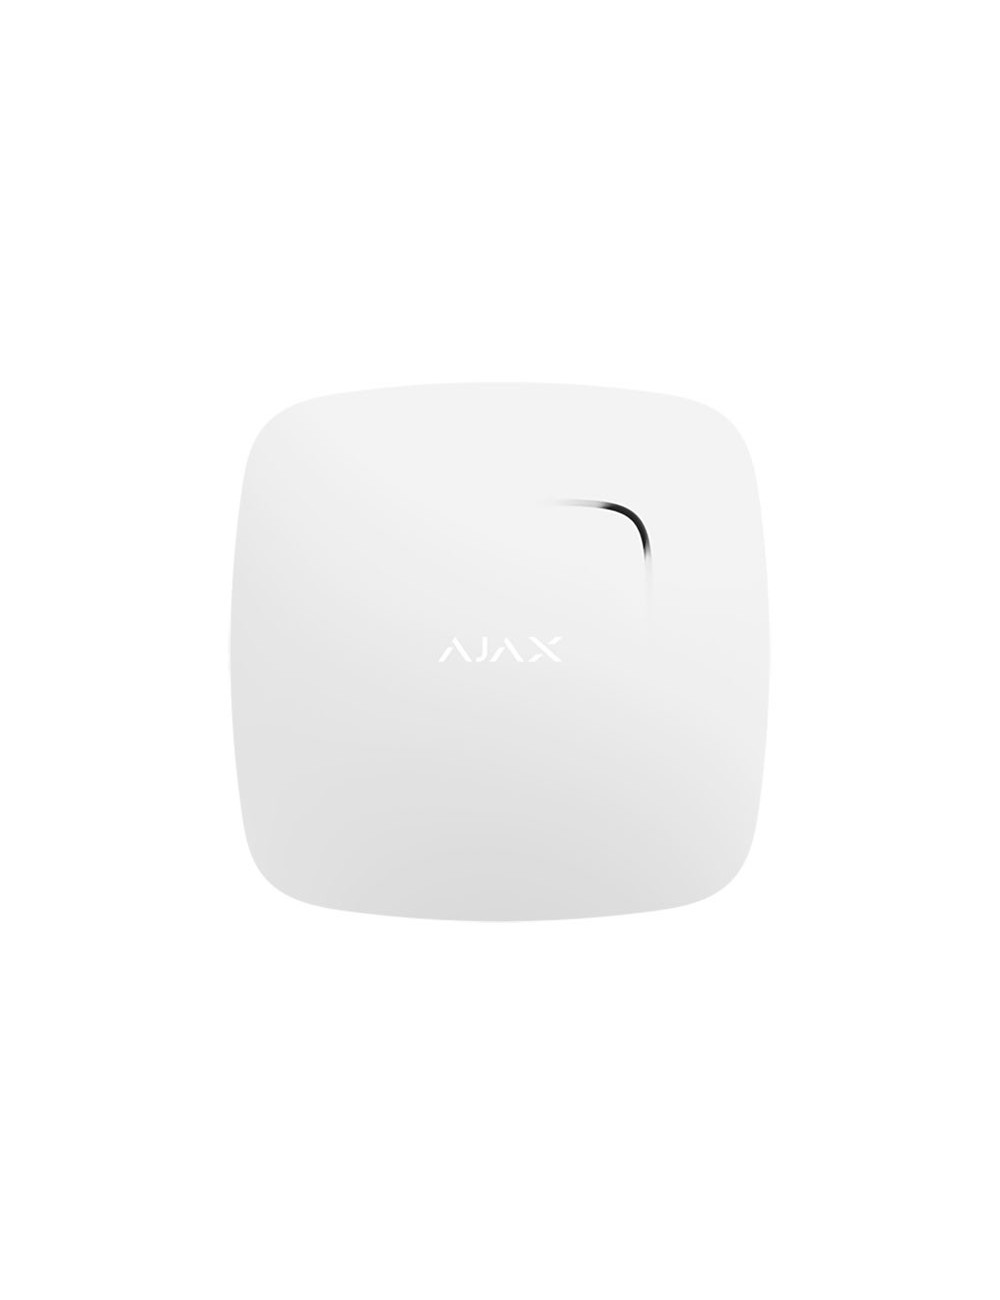 Rilevatore antincendio fumo e calore wireless Ajax bianco